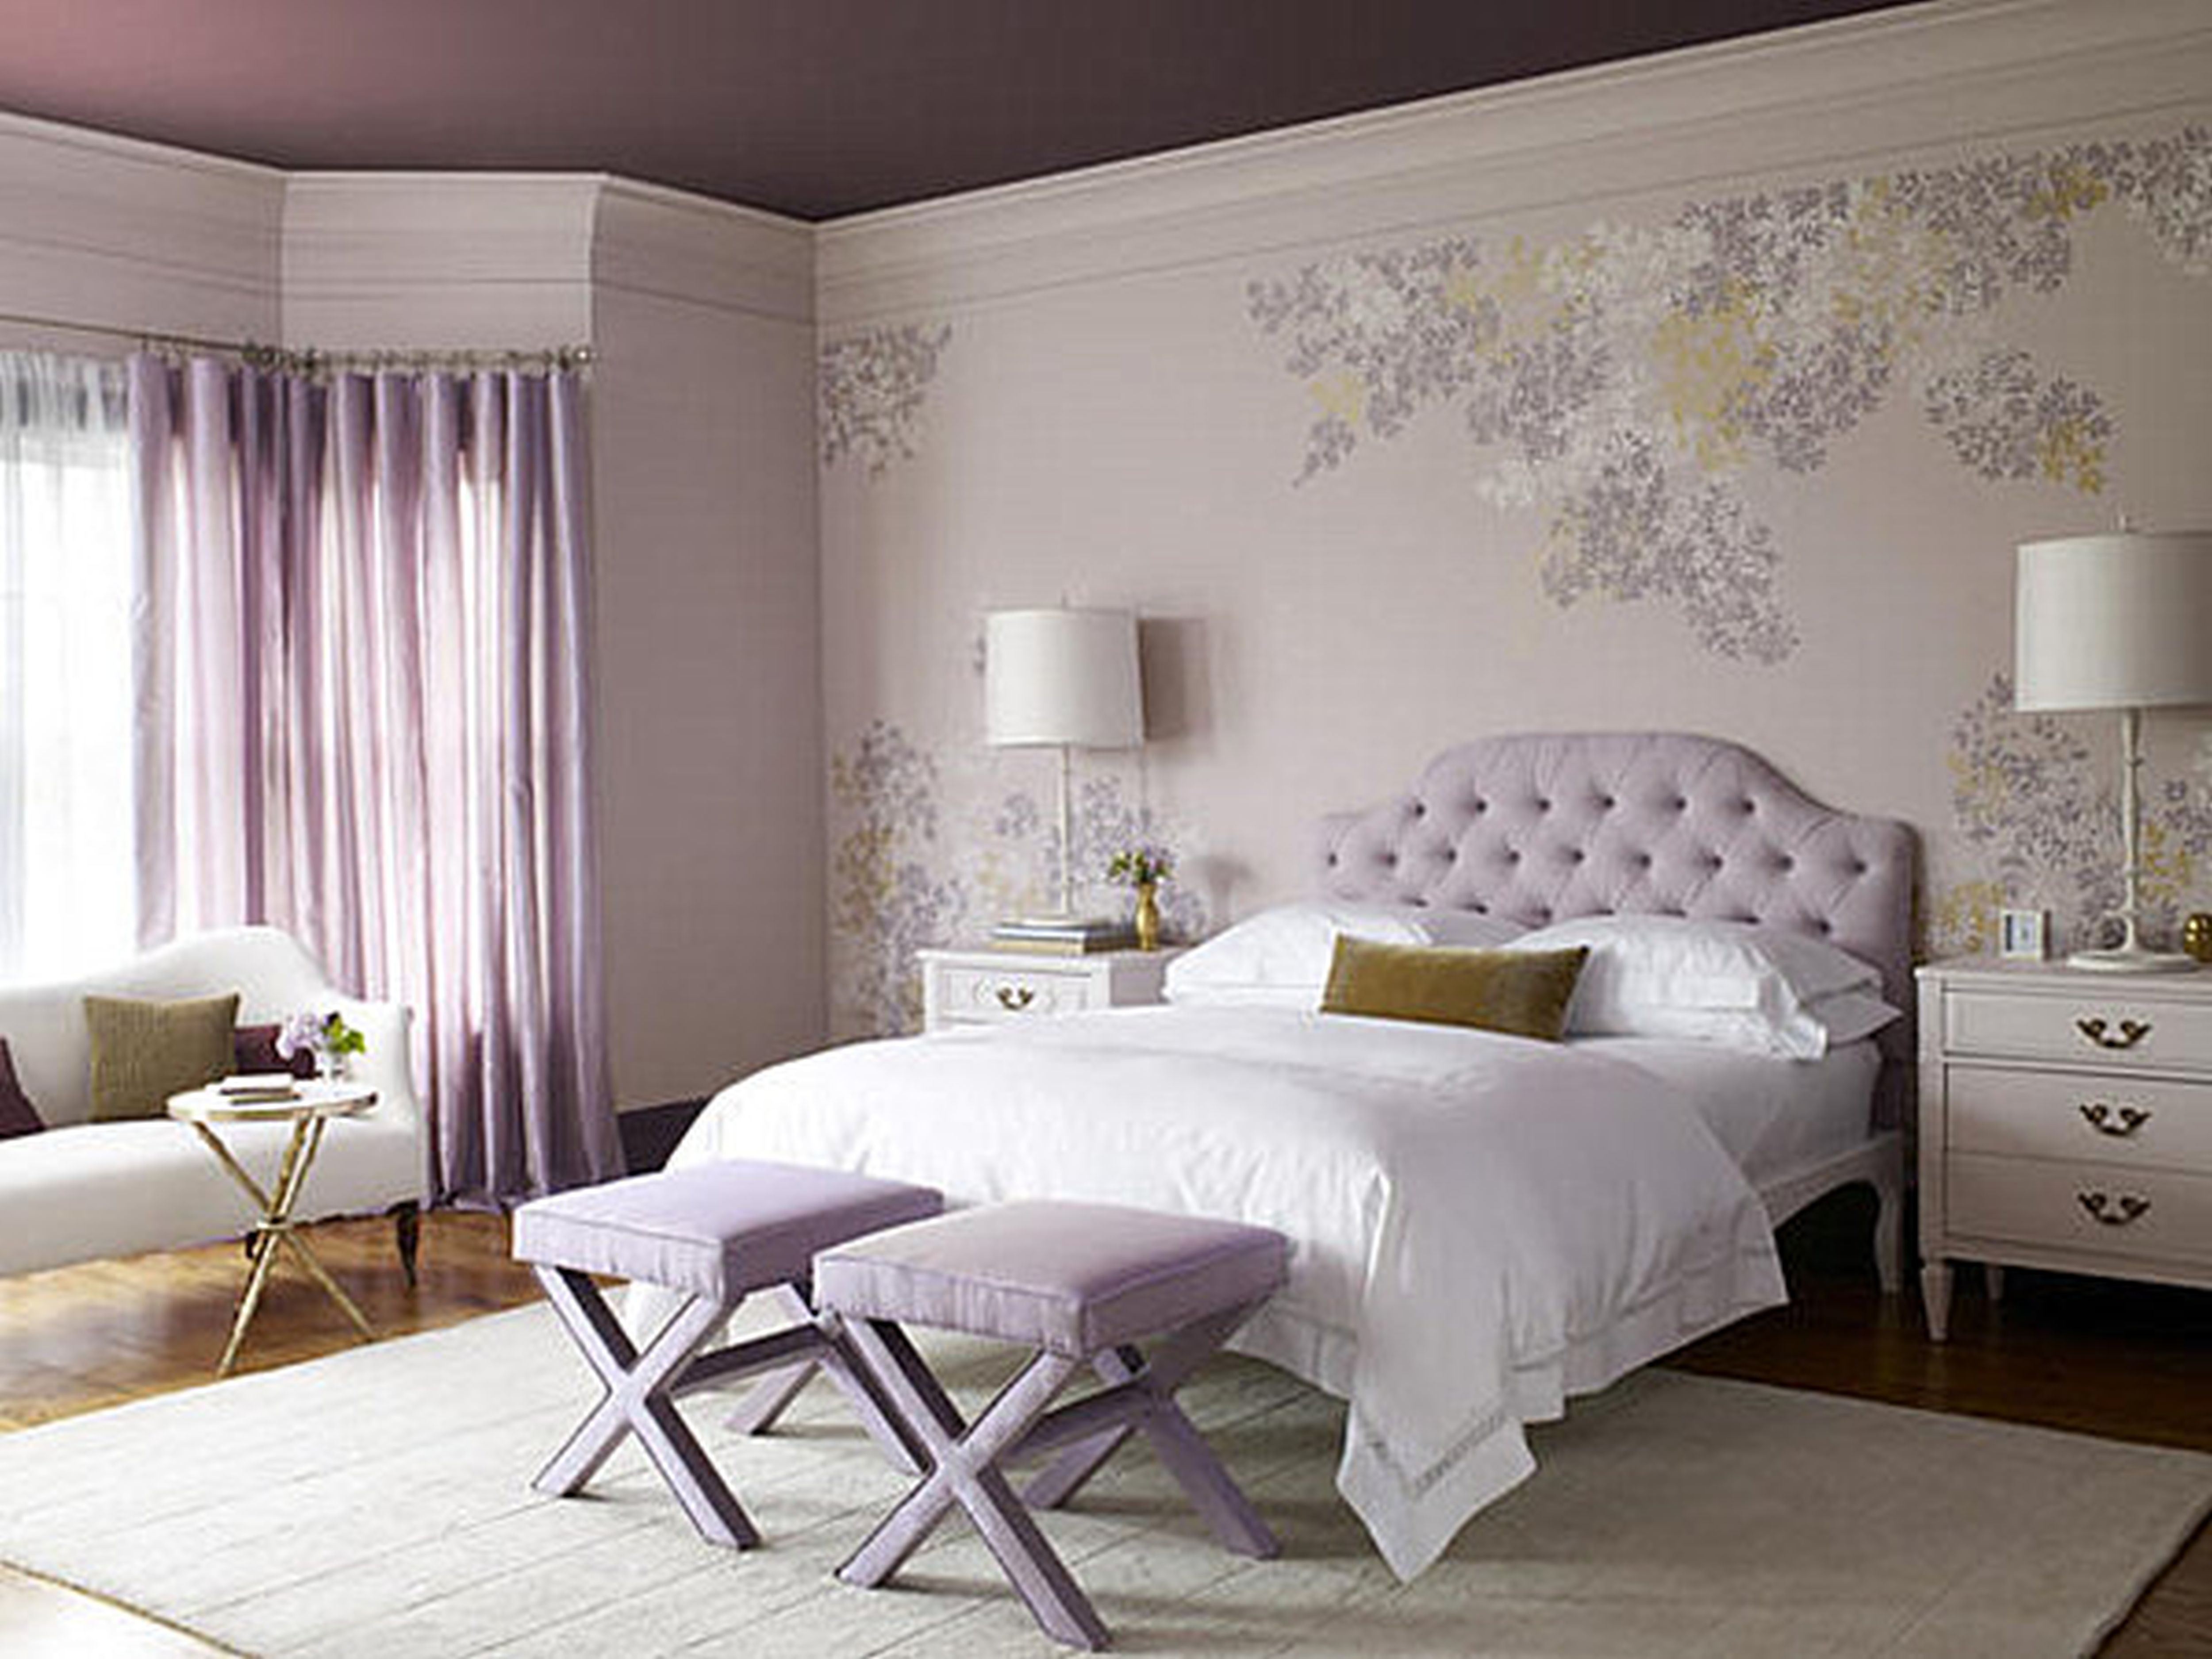 Обои с цветами в интерьере спальни комбинированные